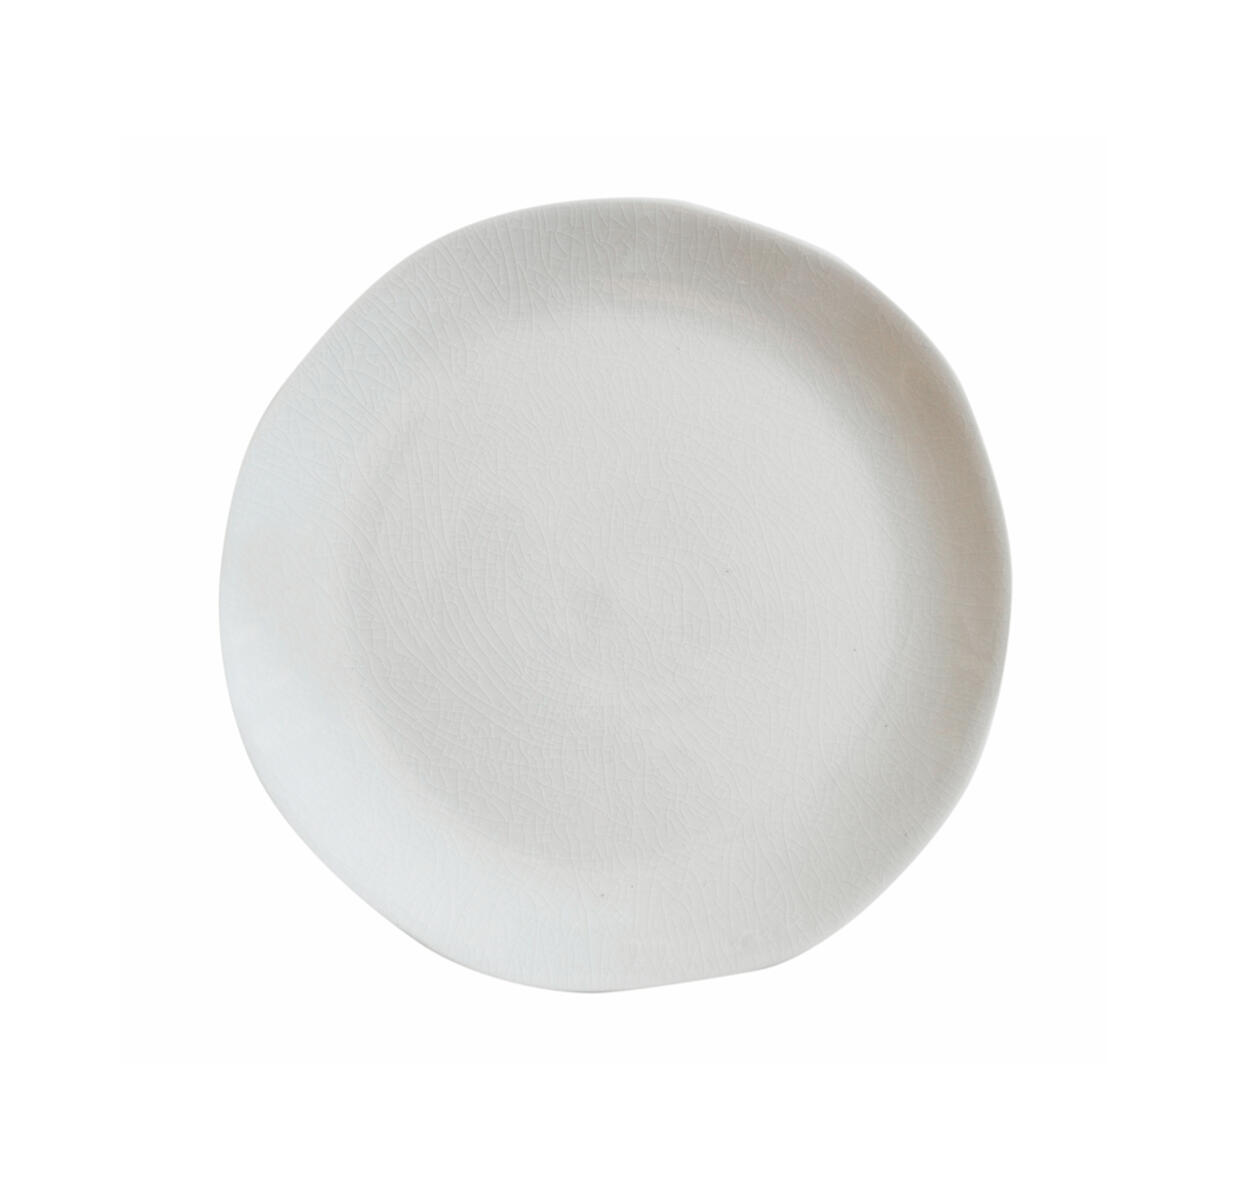 plate s maguelone quartz ceramic manufacturer